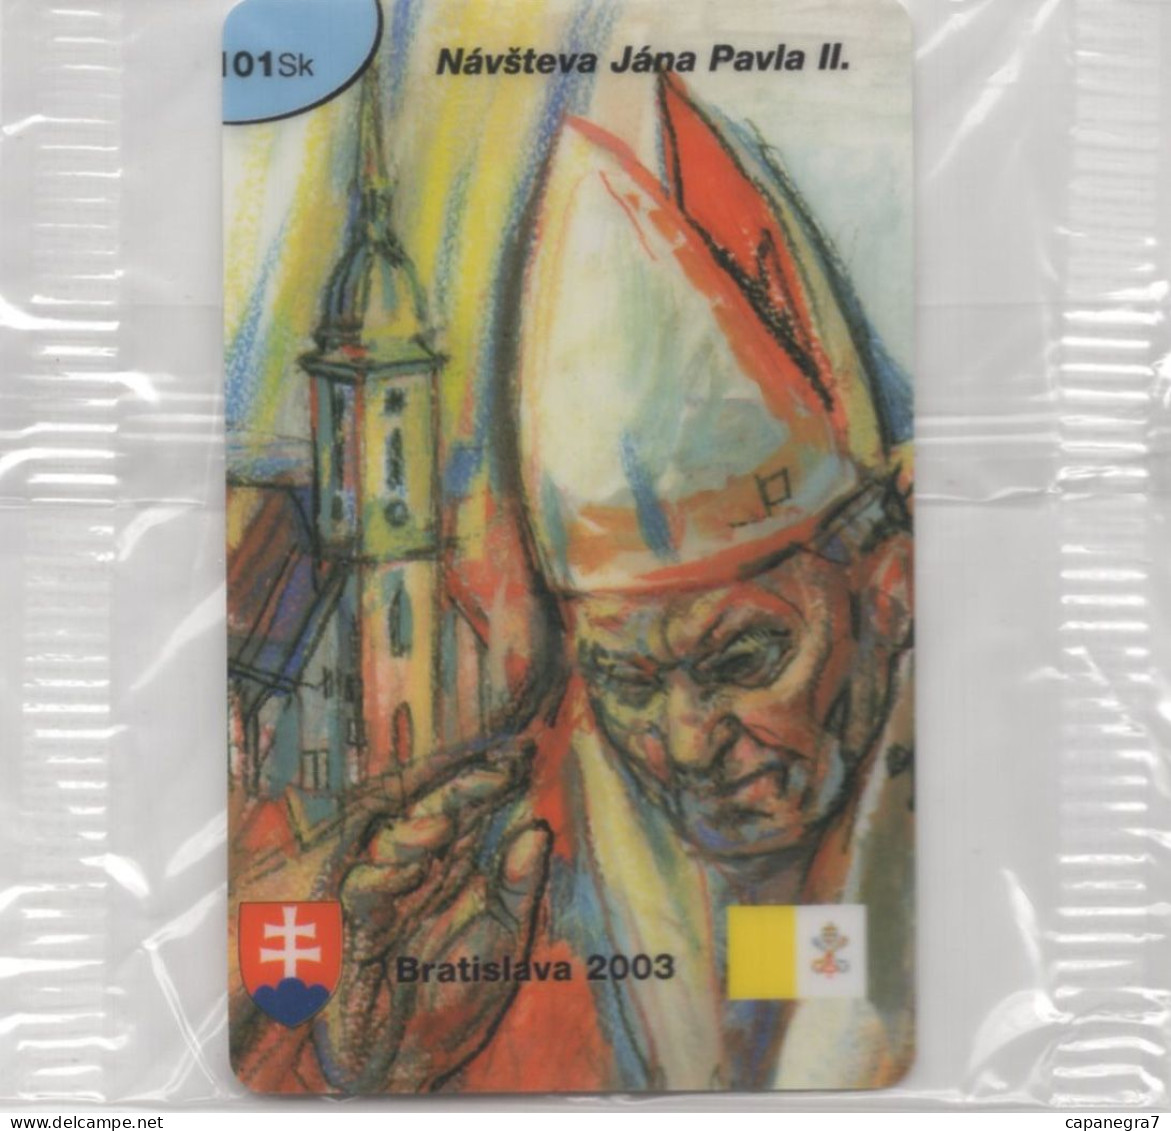 Ope John Paulu II. - Bratislava 2003, Remote Memory, Prepaid Calling Card, 101 Sk., 1.250 Pc., GlobalIPhone, Slovakia, M - Eslovaquia